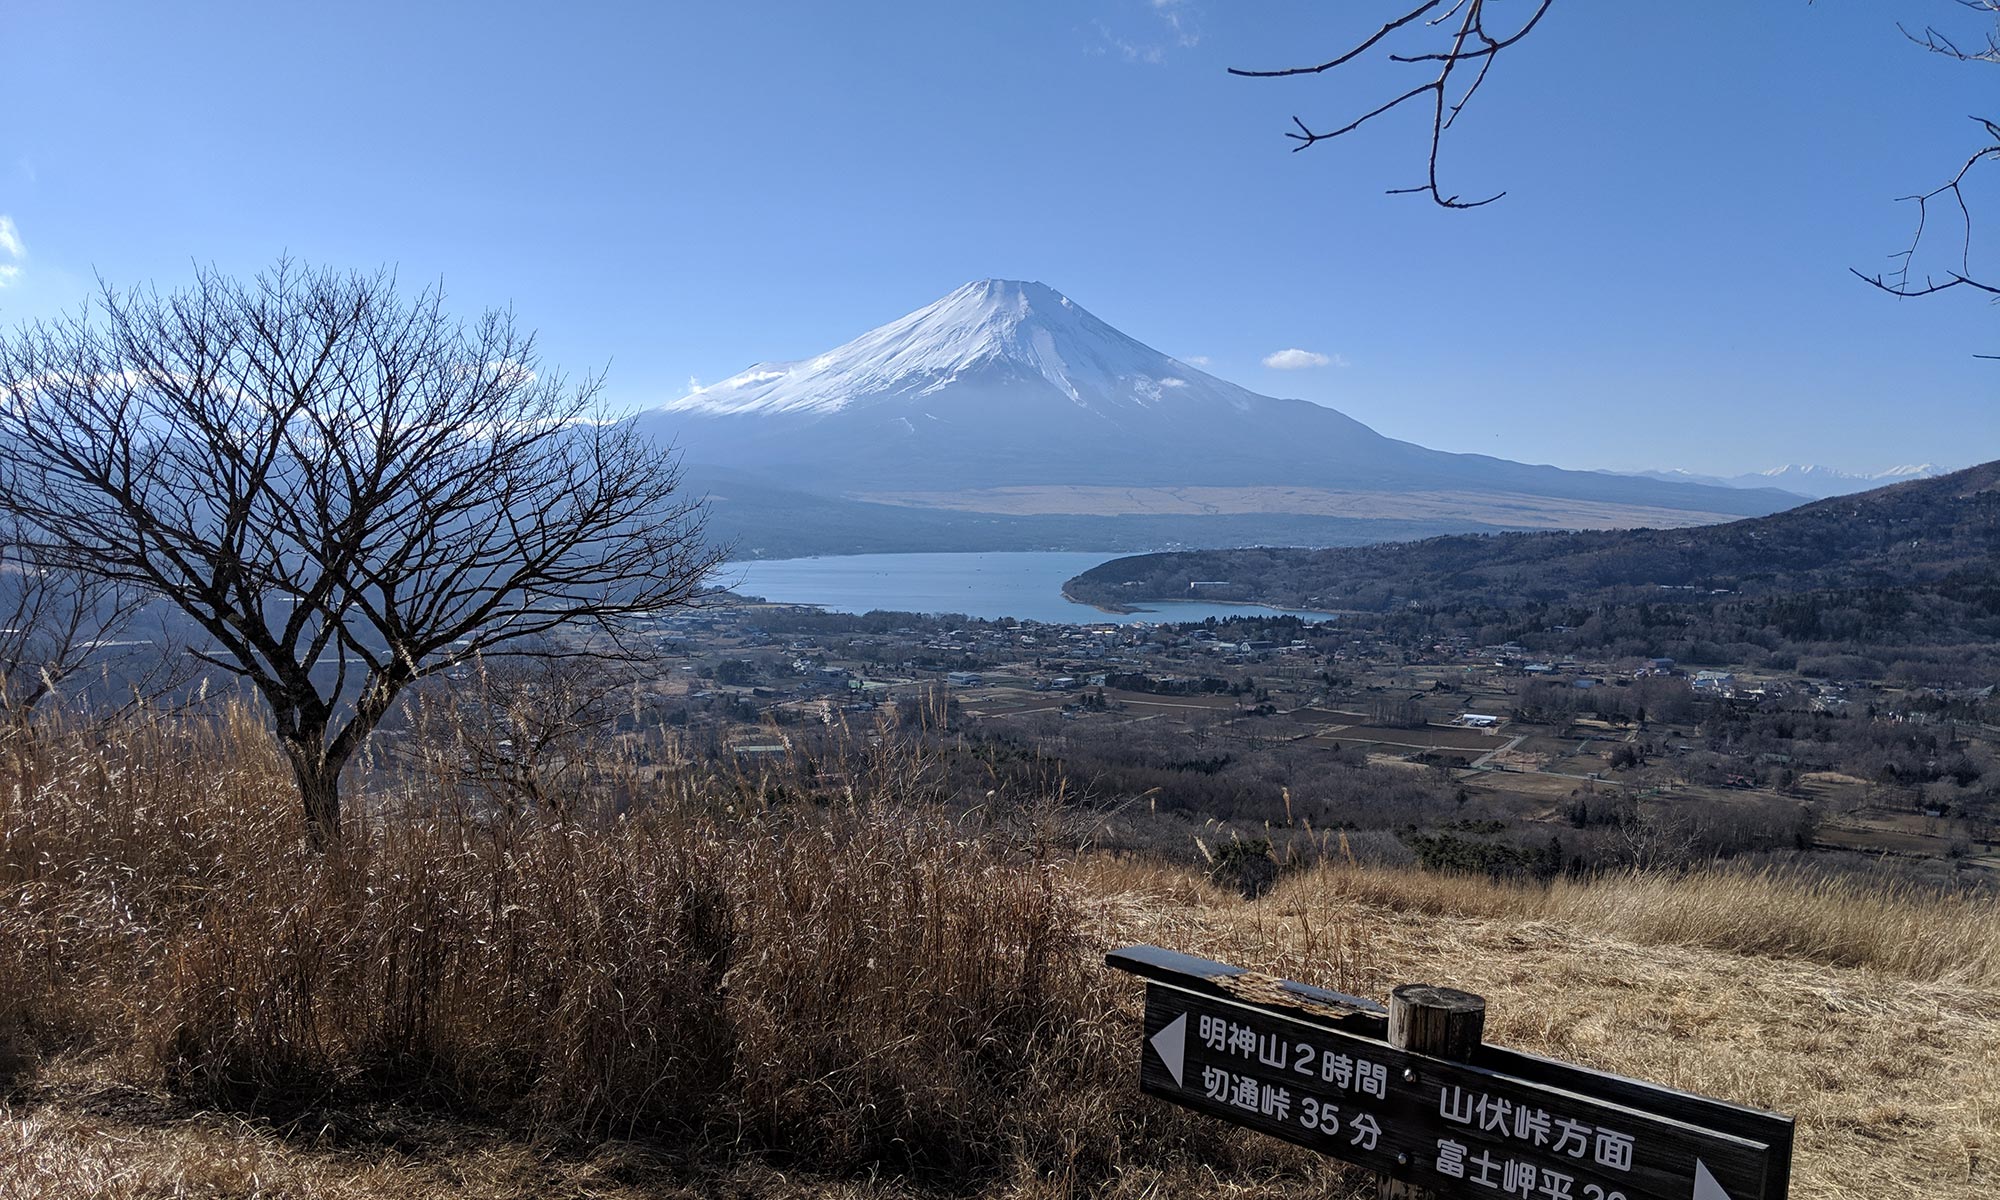 高指山 明神山 鉄砲木ノ頭 ハイキングコース 二つの山頂から富士の絶景を望む やまころ旅ブログ